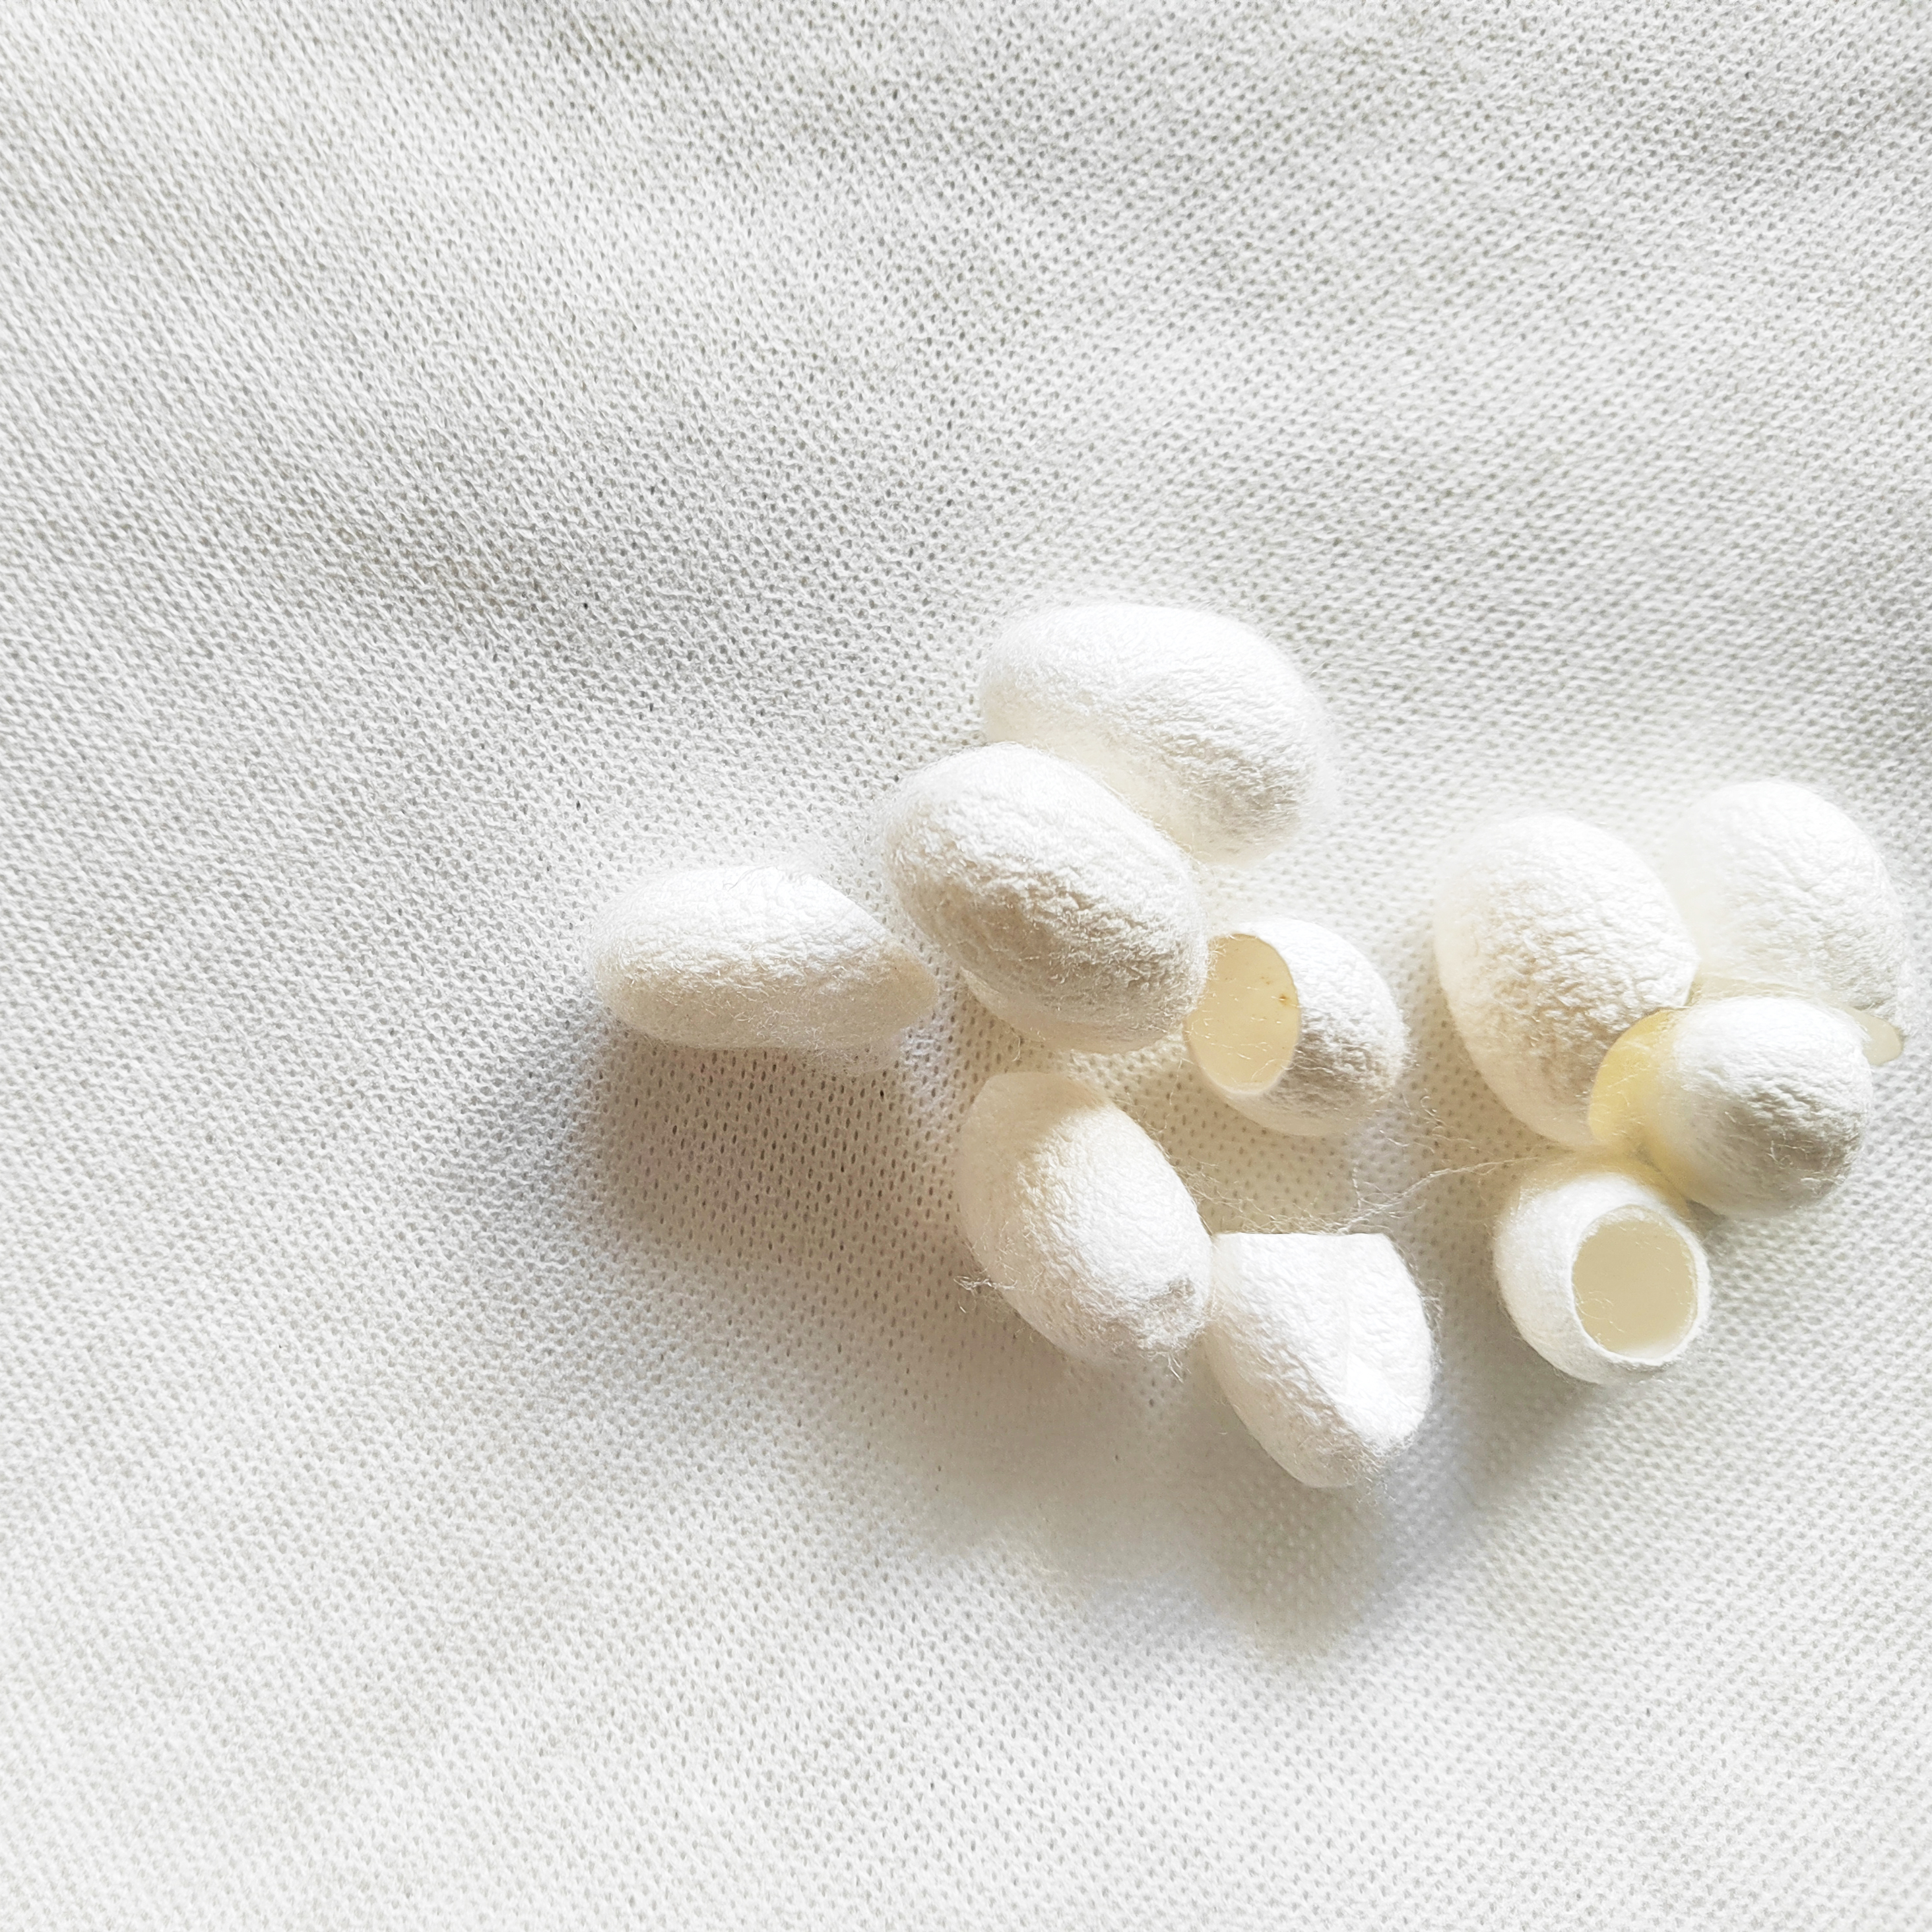 苏州市3D天然蚕丝立体压花卫生用品面层厂家3D天然蚕丝立体压花卫生用品面层